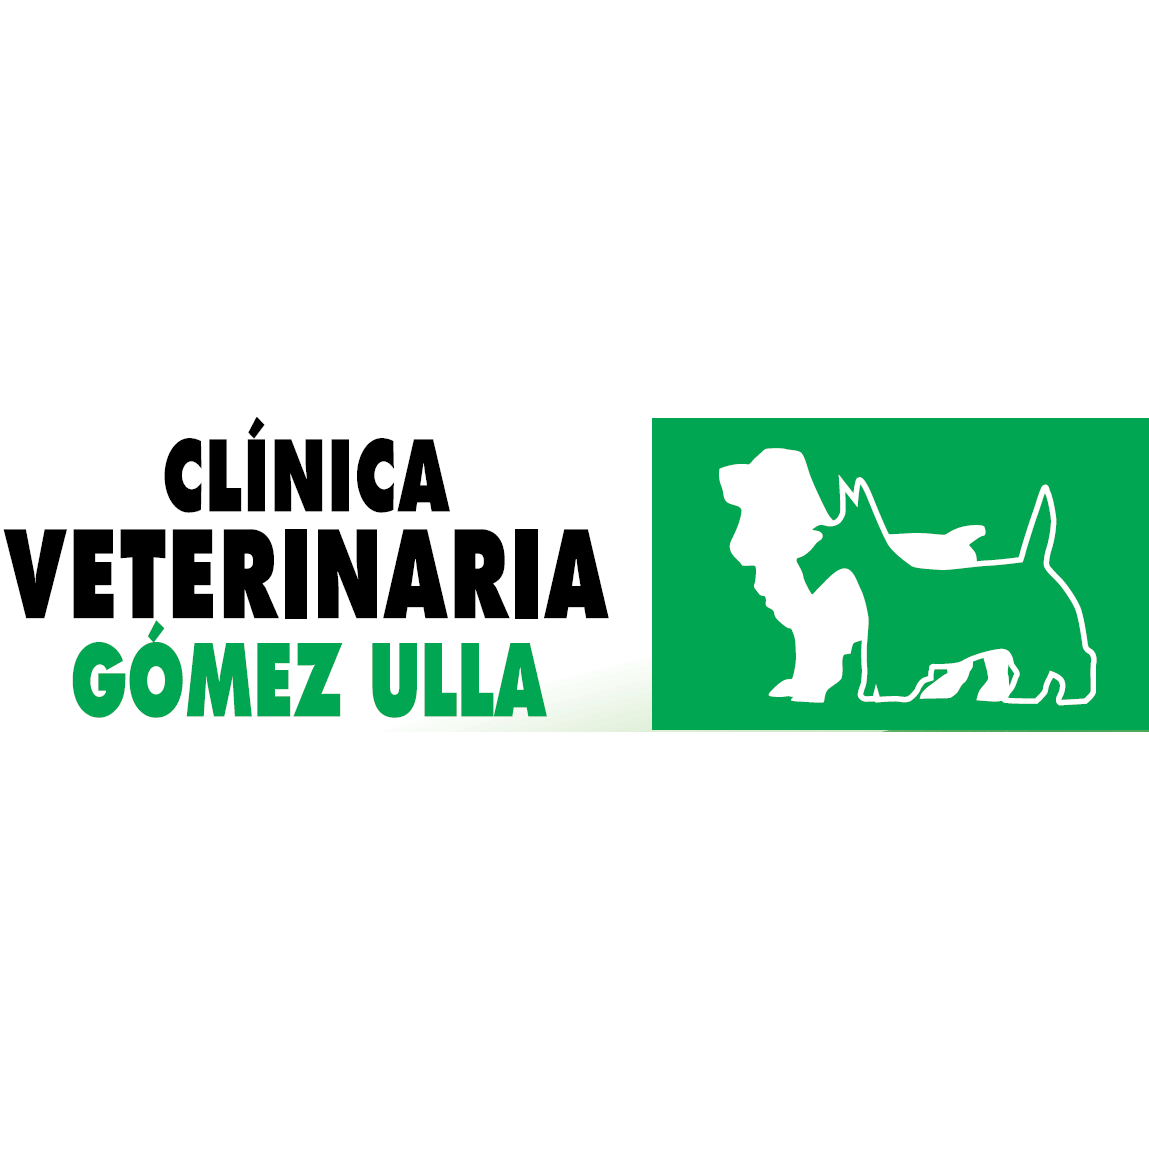 Veterinario en Salamanca, Gómez Ulla Clínica Veterinaria